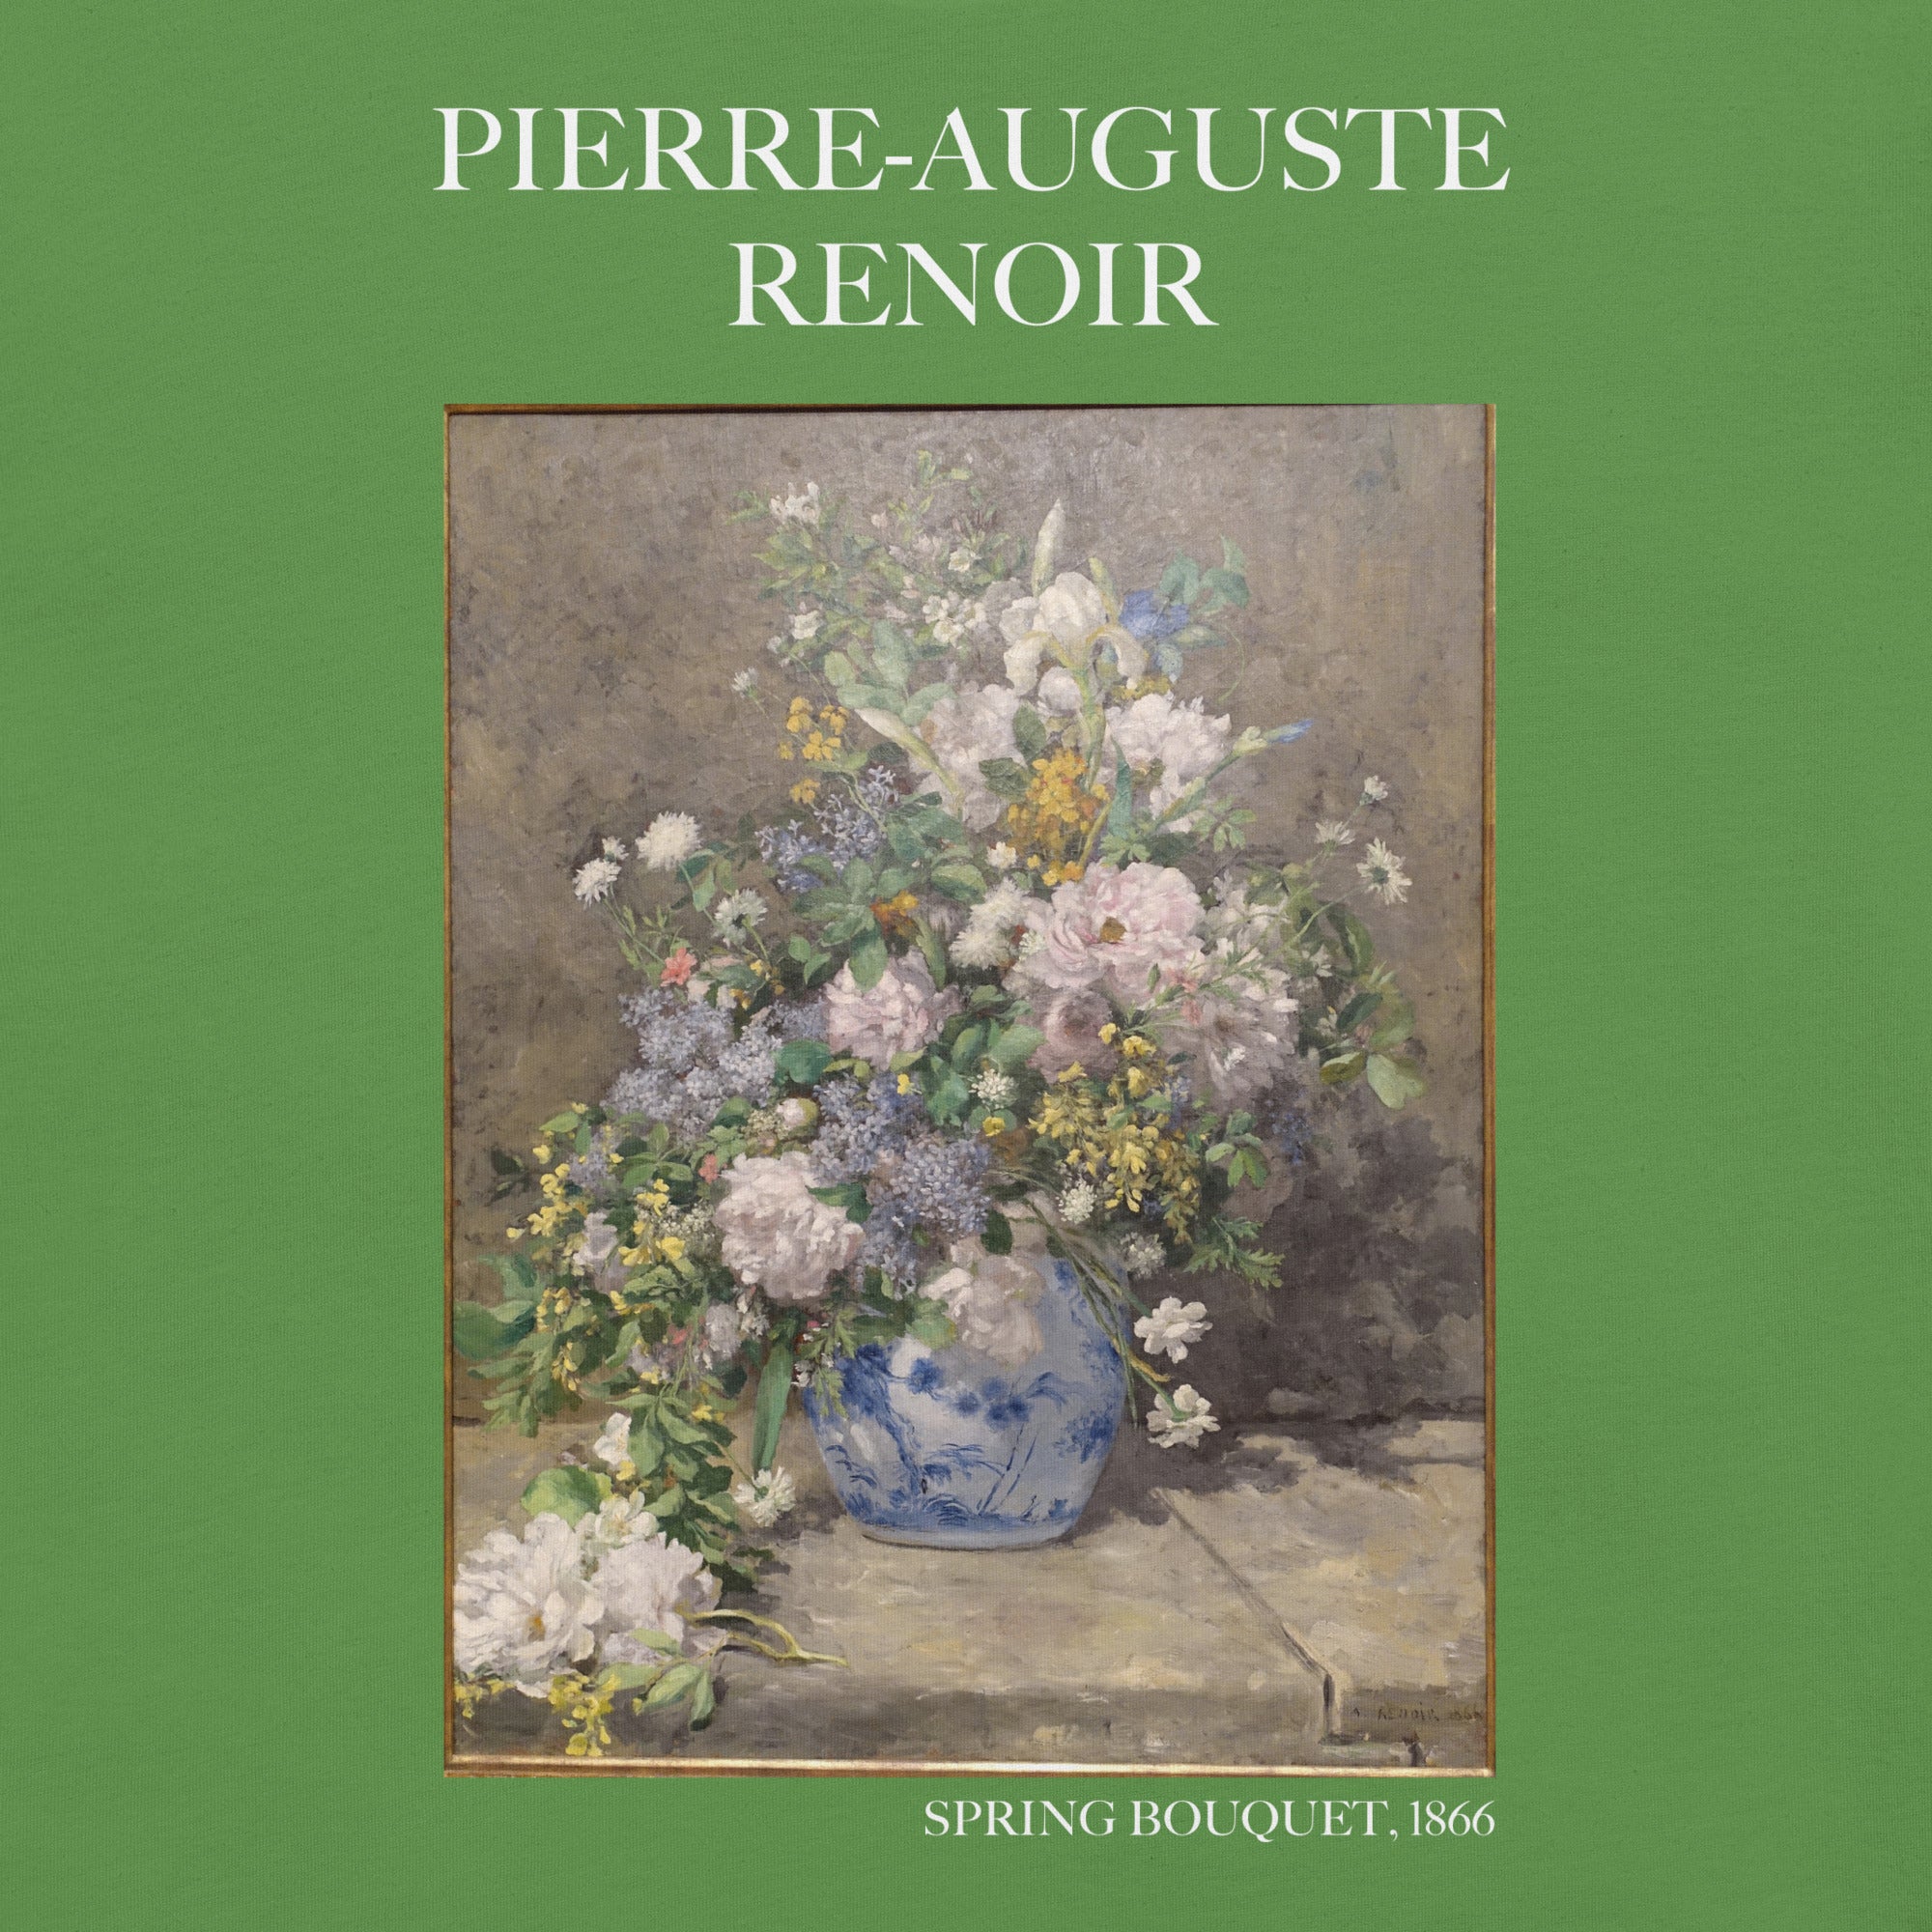 Pierre-Auguste Renoir 'Spring Bouquet' Famous Painting T-Shirt | Unisex Classic Art Tee